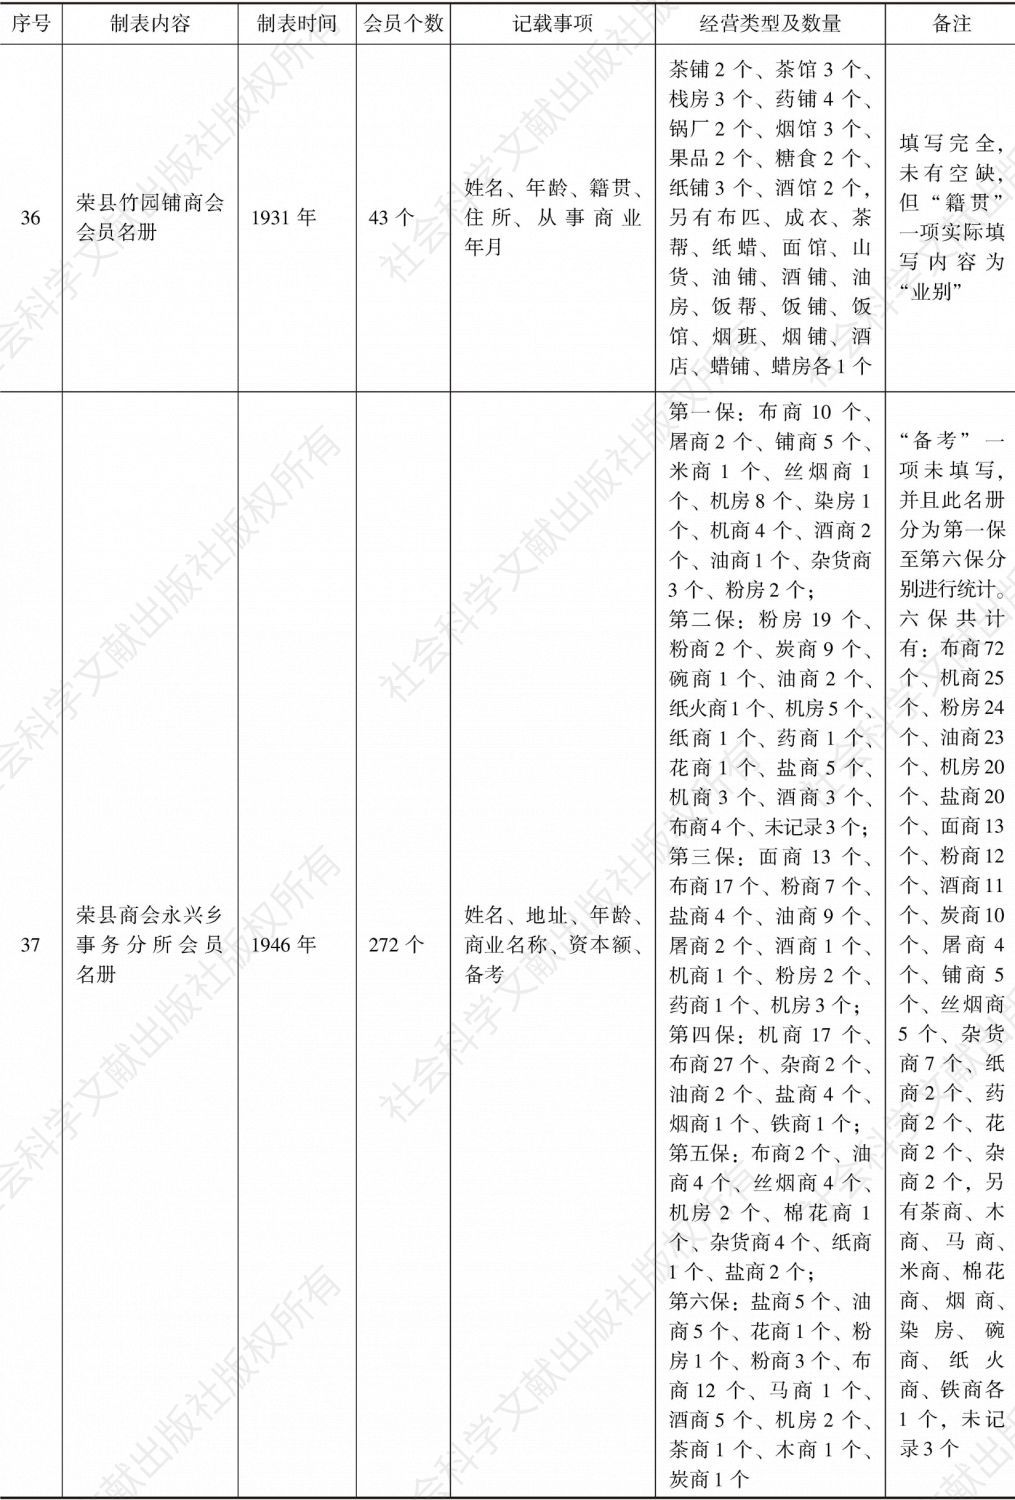 荣县商会事务分所造报名册汇编-续表9